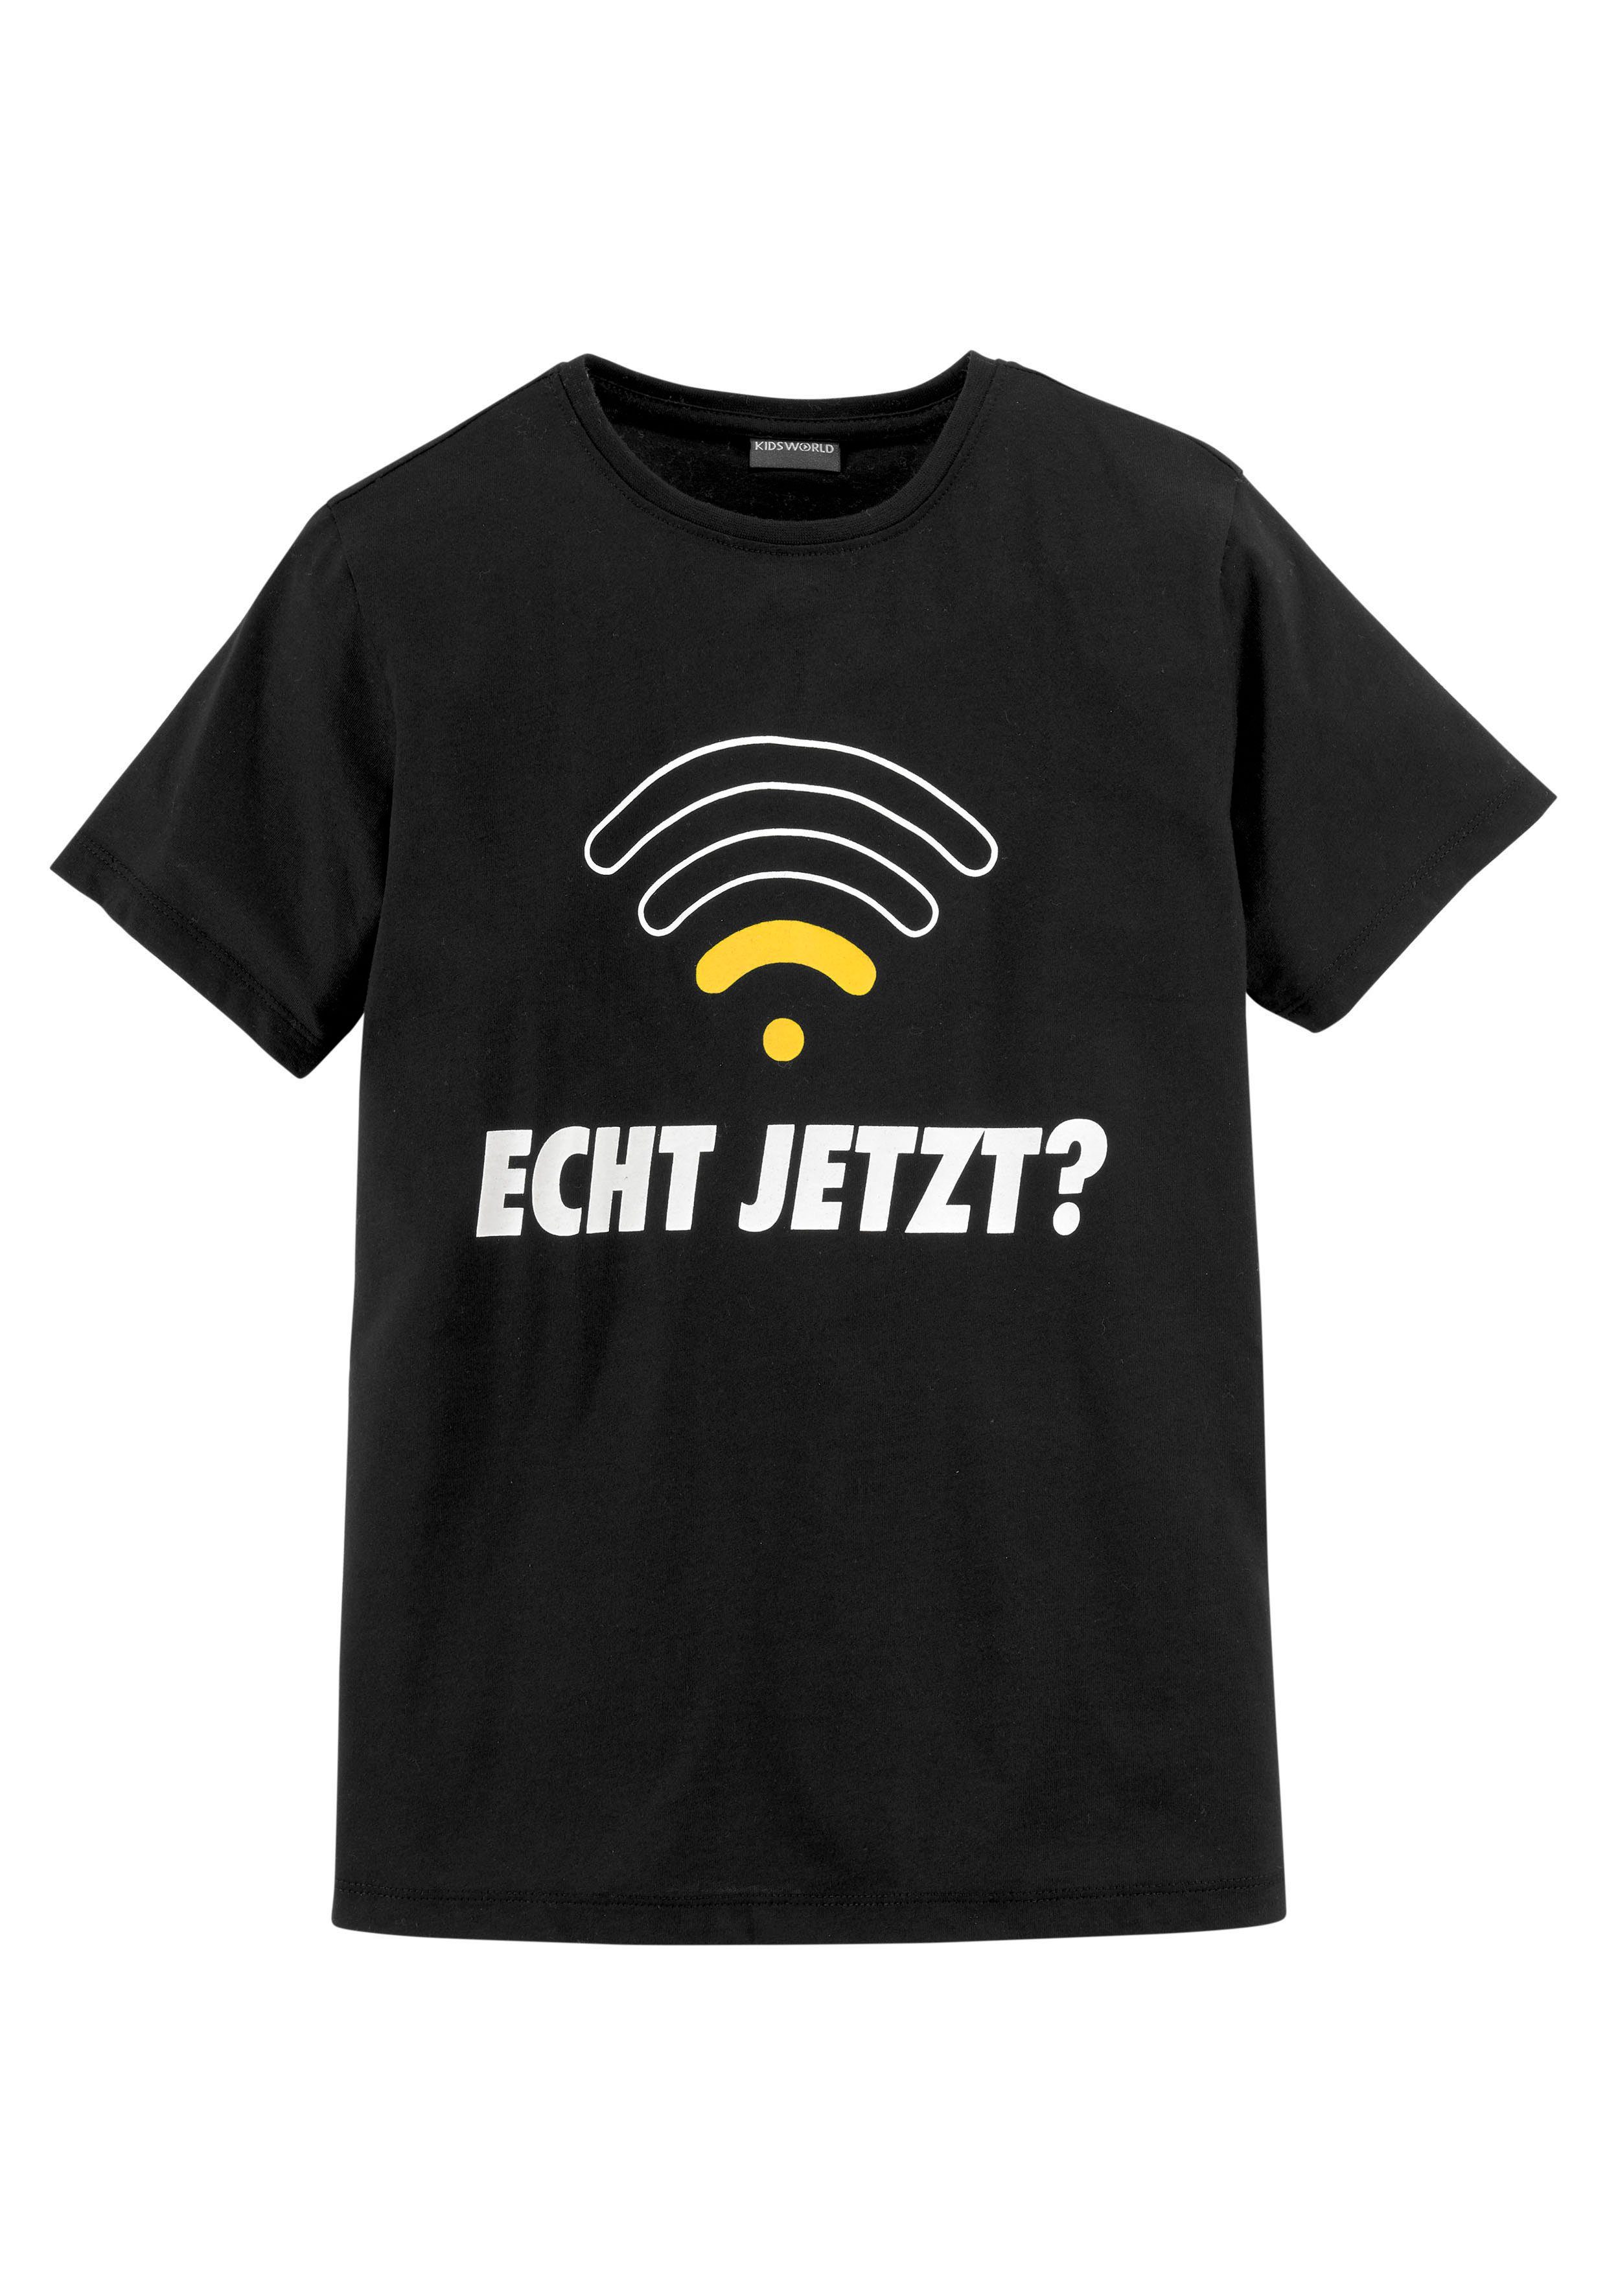 JETZT?, KIDSWORLD ECHT T-Shirt Spruch